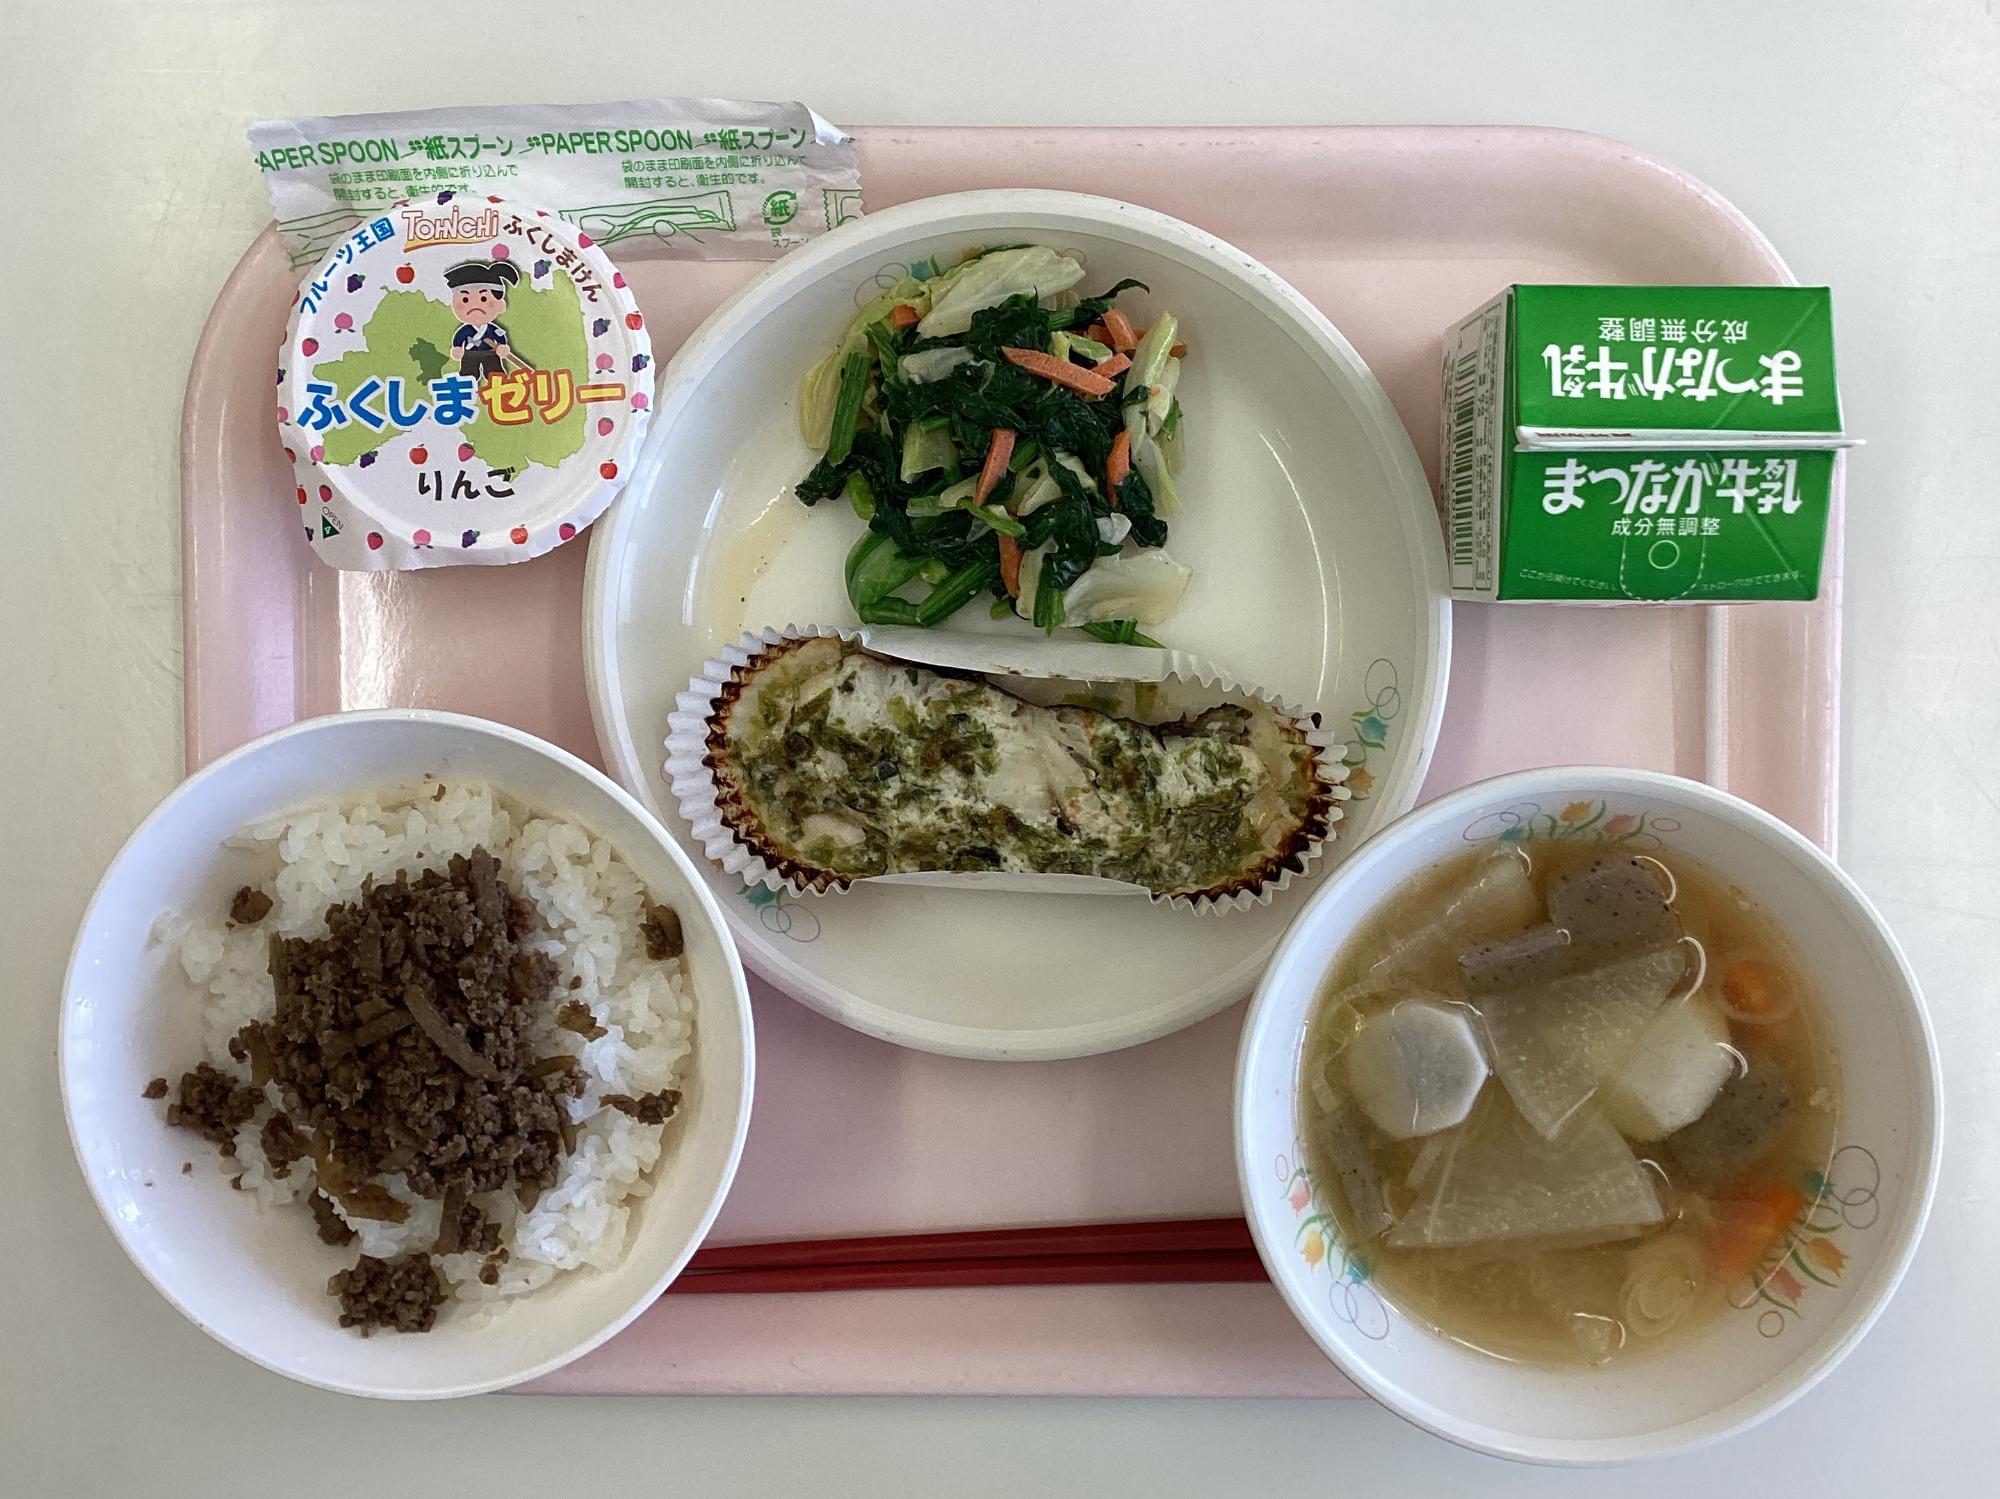 中村第二小学校食育授業の一環で提供された県産食材を使用した給食